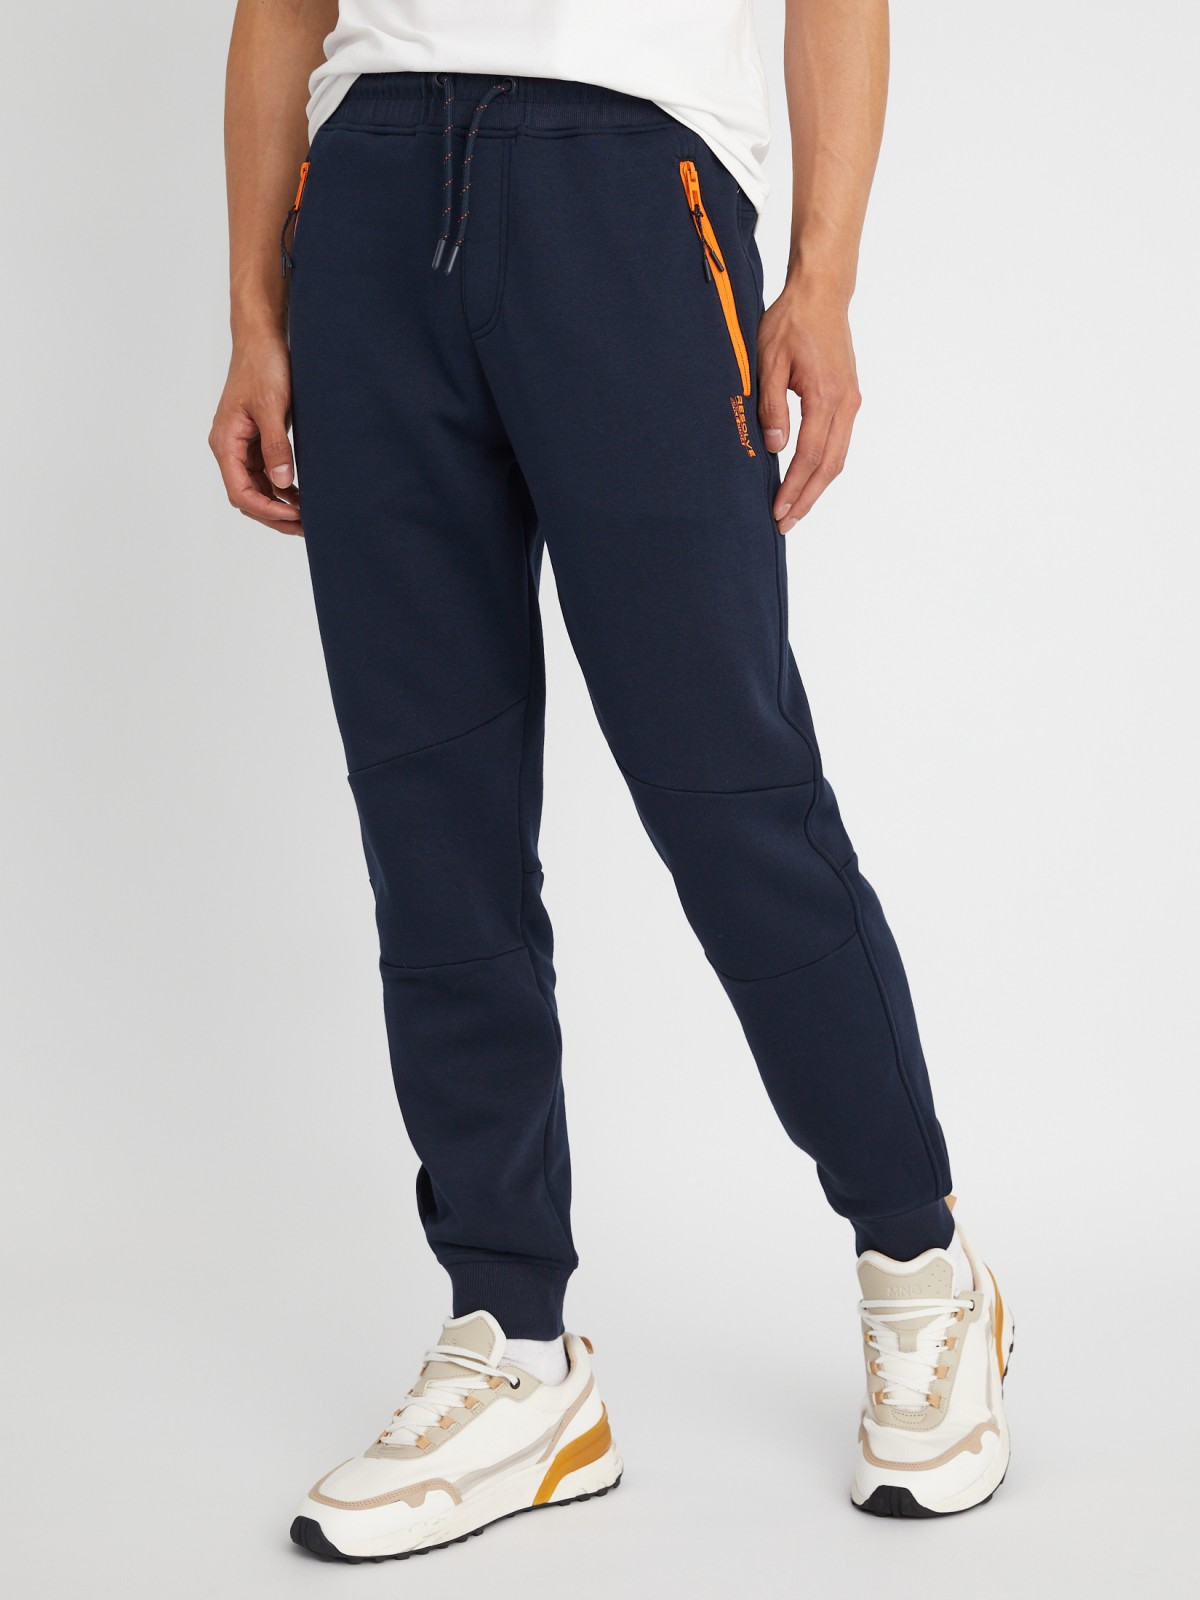 Утеплённые трикотажные брюки-джоггеры в спортивном стиле zolla 21333762F033, цвет синий, размер L - фото 2